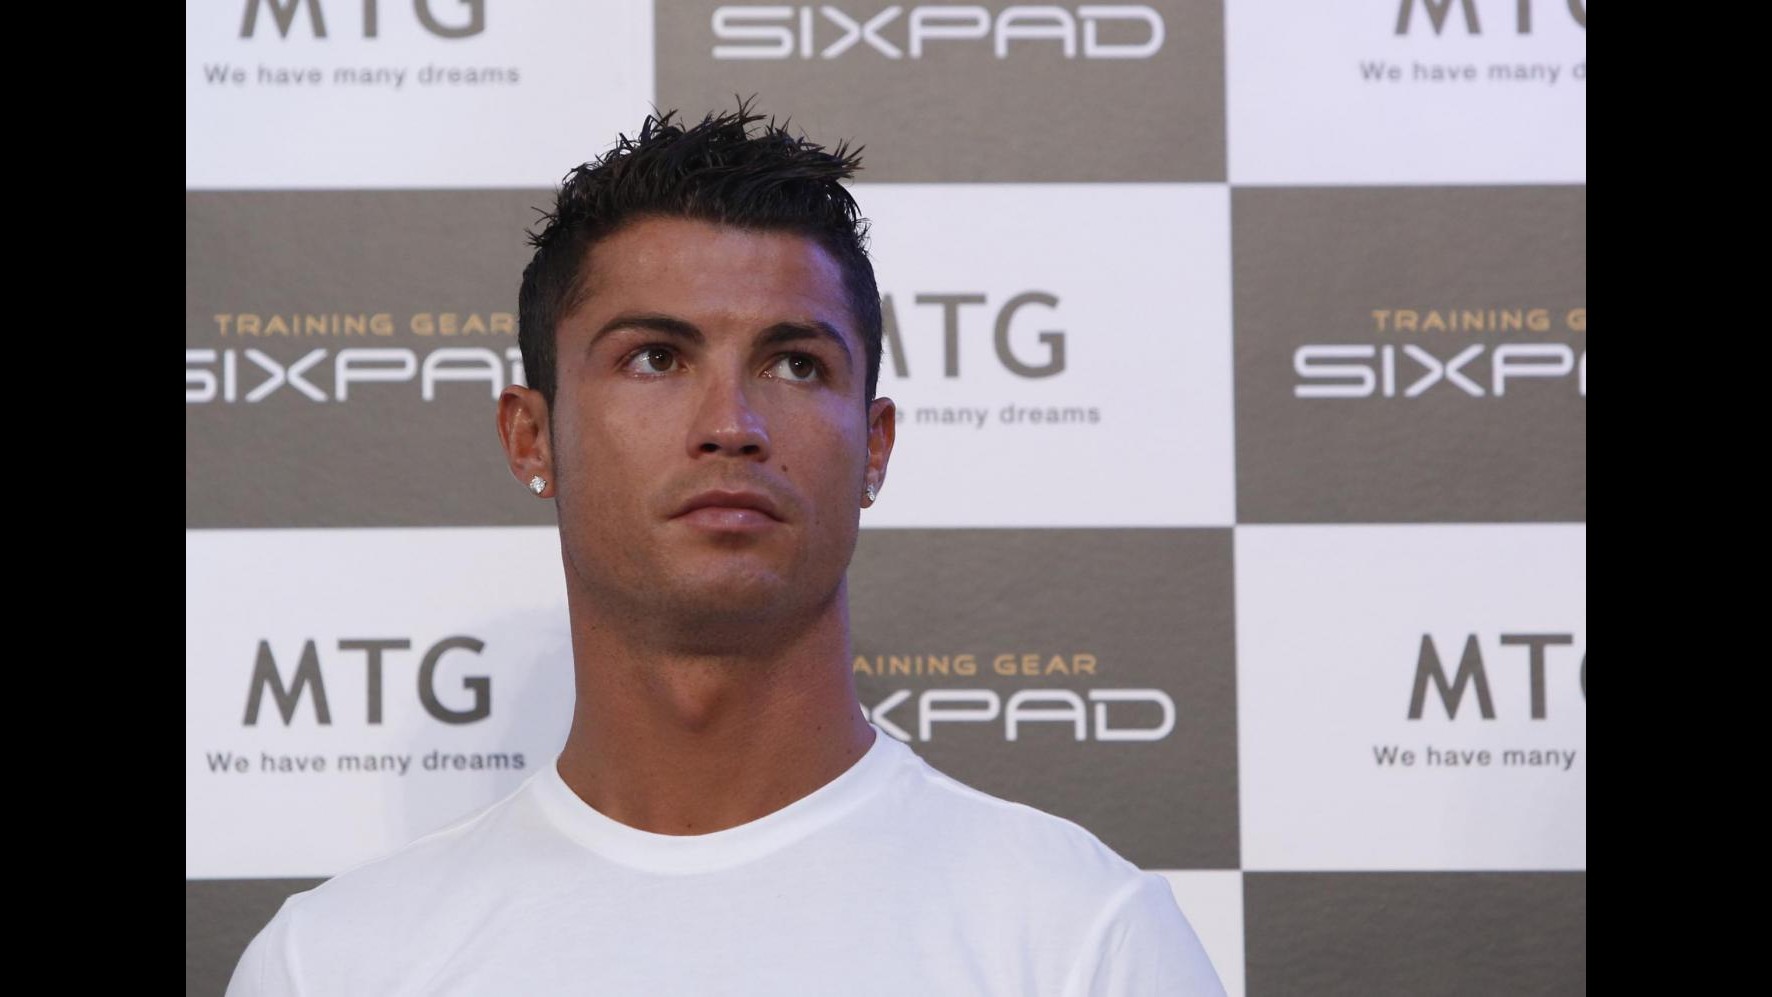 Stampa francese: Psg prepara assalto a Ronaldo, Ibra via?